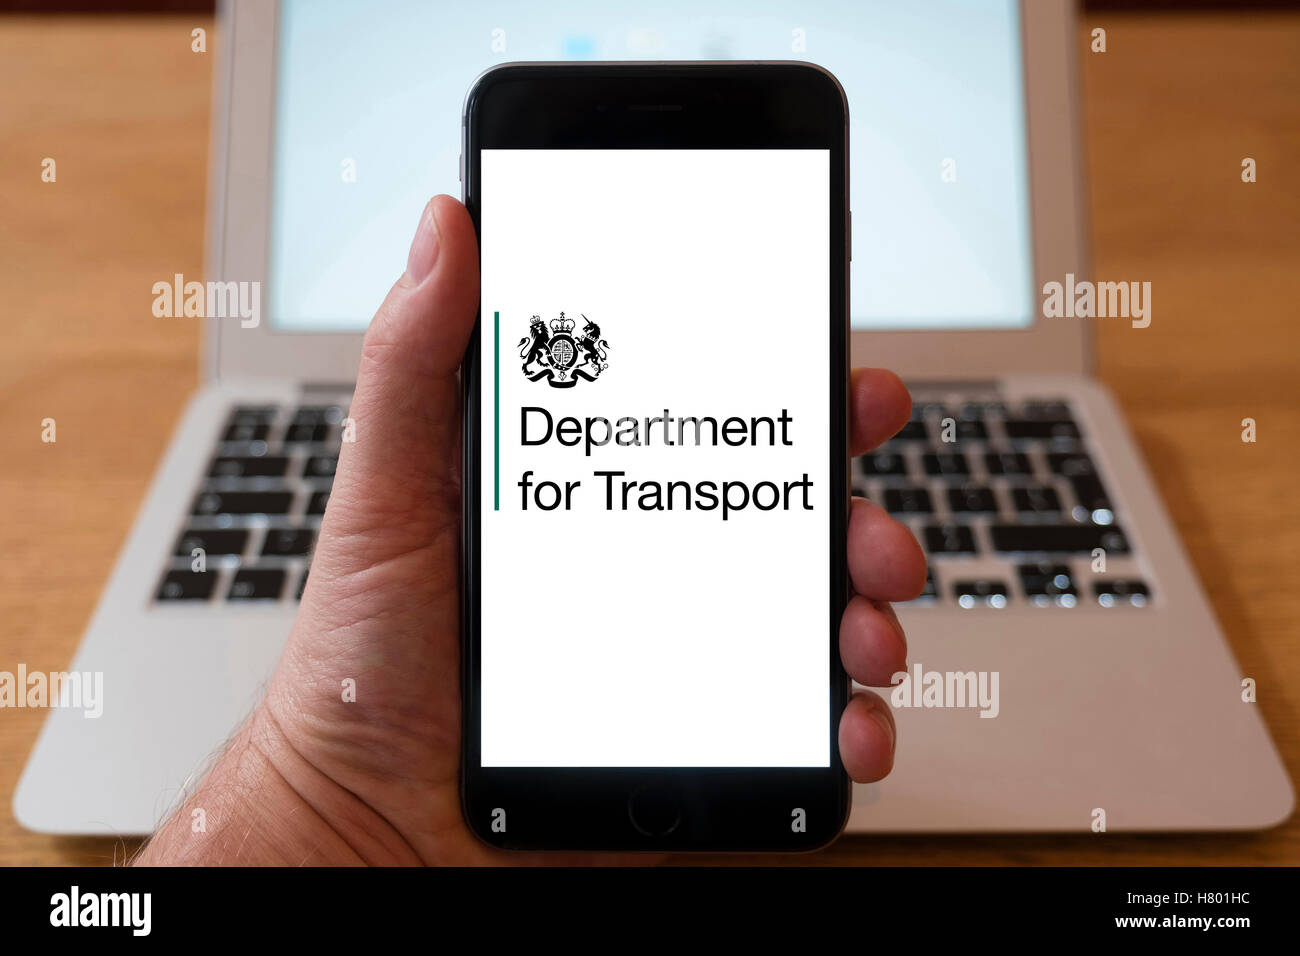 Usando el iPhone Smartphone para mostrar el logotipo del Departamento de Transportes del Reino Unido. Foto de stock